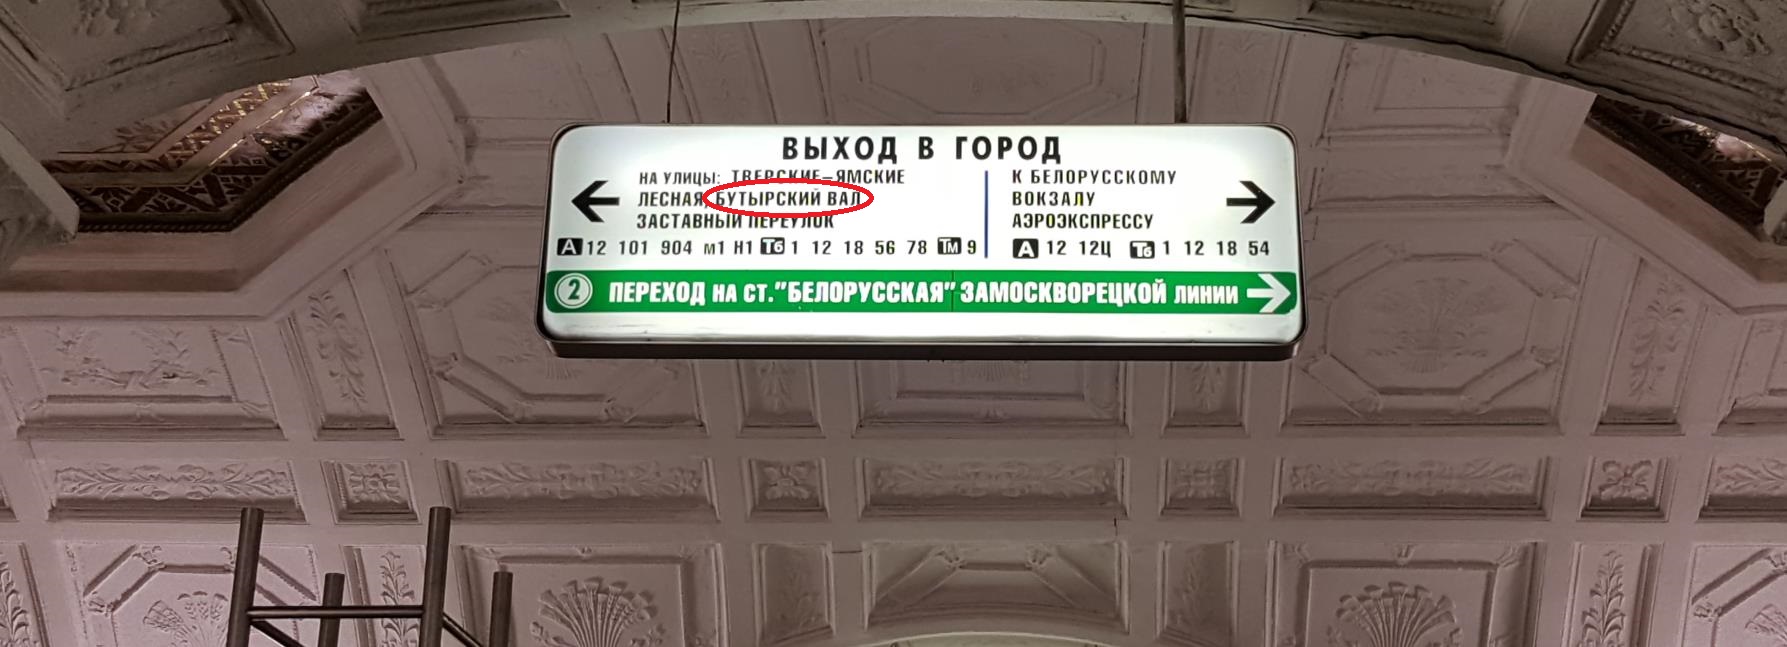 метро белорусская выходы